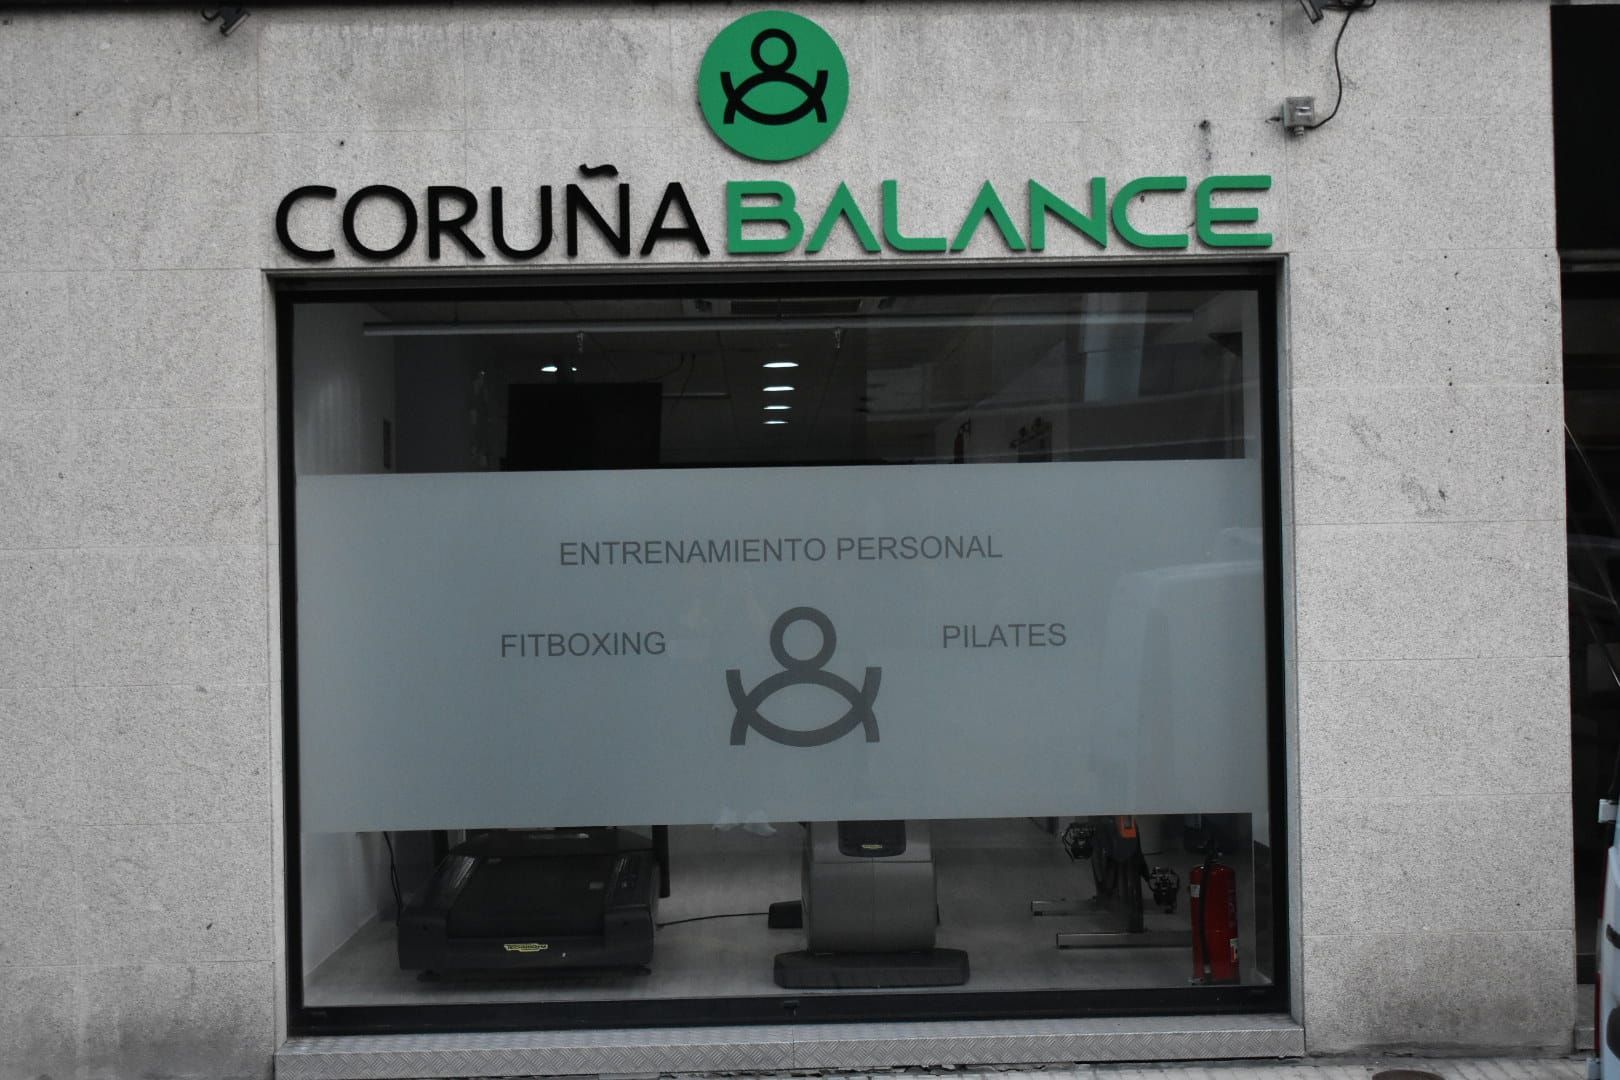 Foto 6 de Pilates en  | Coruña Balance